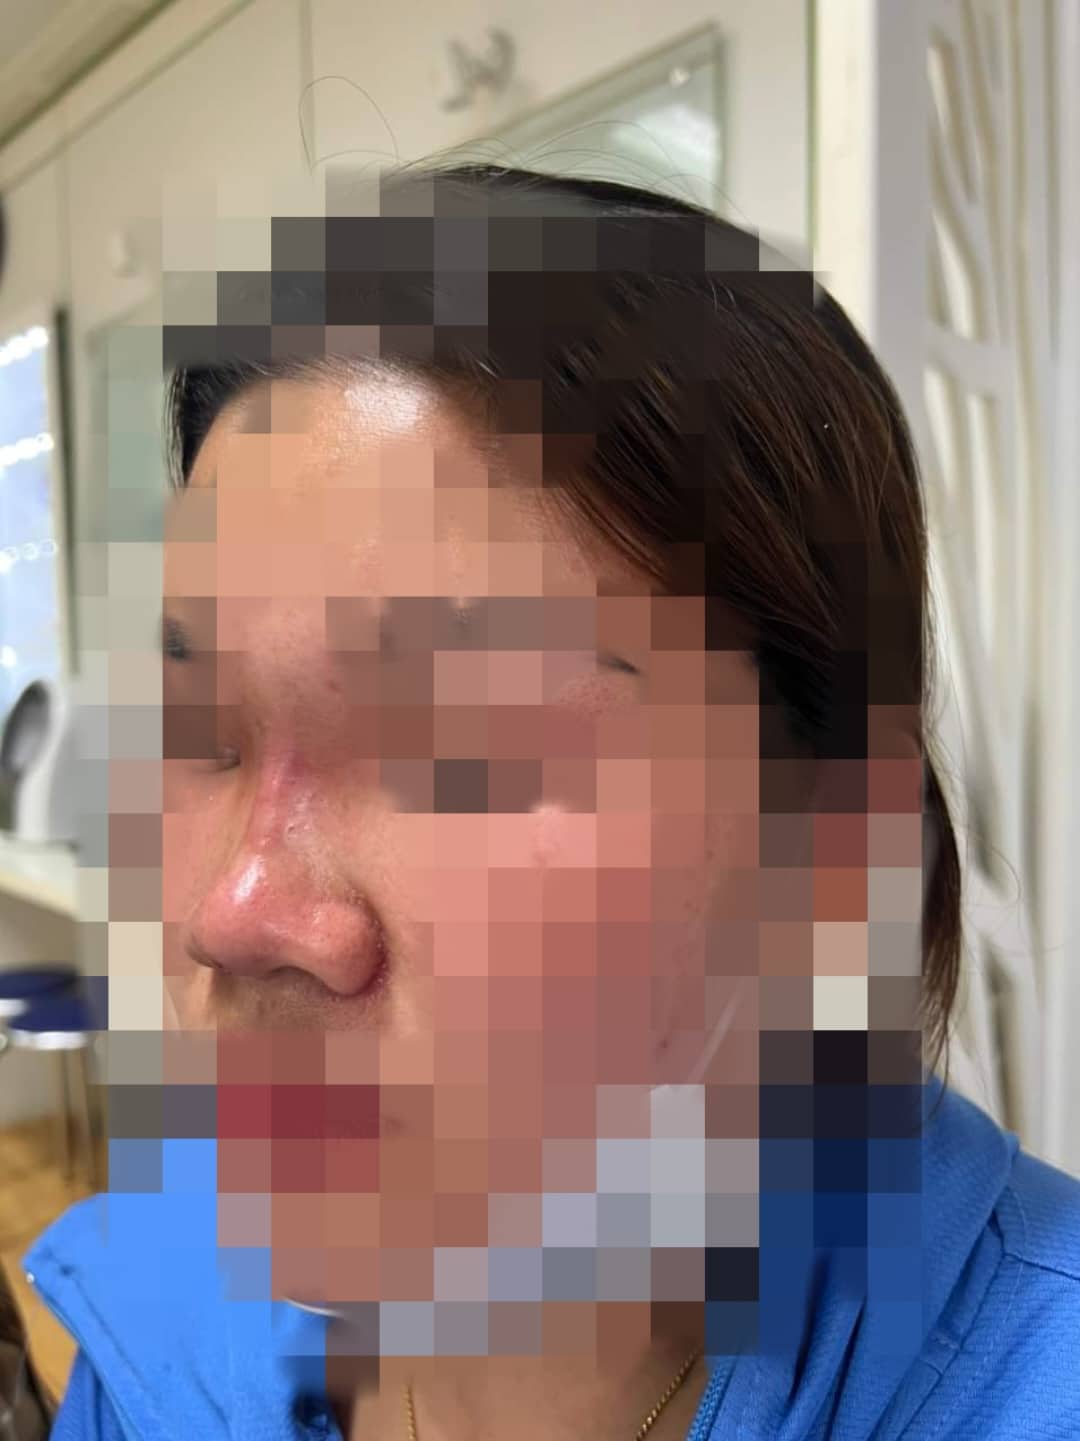 Phần mũi tiêm filler của nữ bệnh nhân tại Thanh Hóa bị sưng nề, đỏ ứng sau khi thực hiện tại spa (ảnh BSCC)